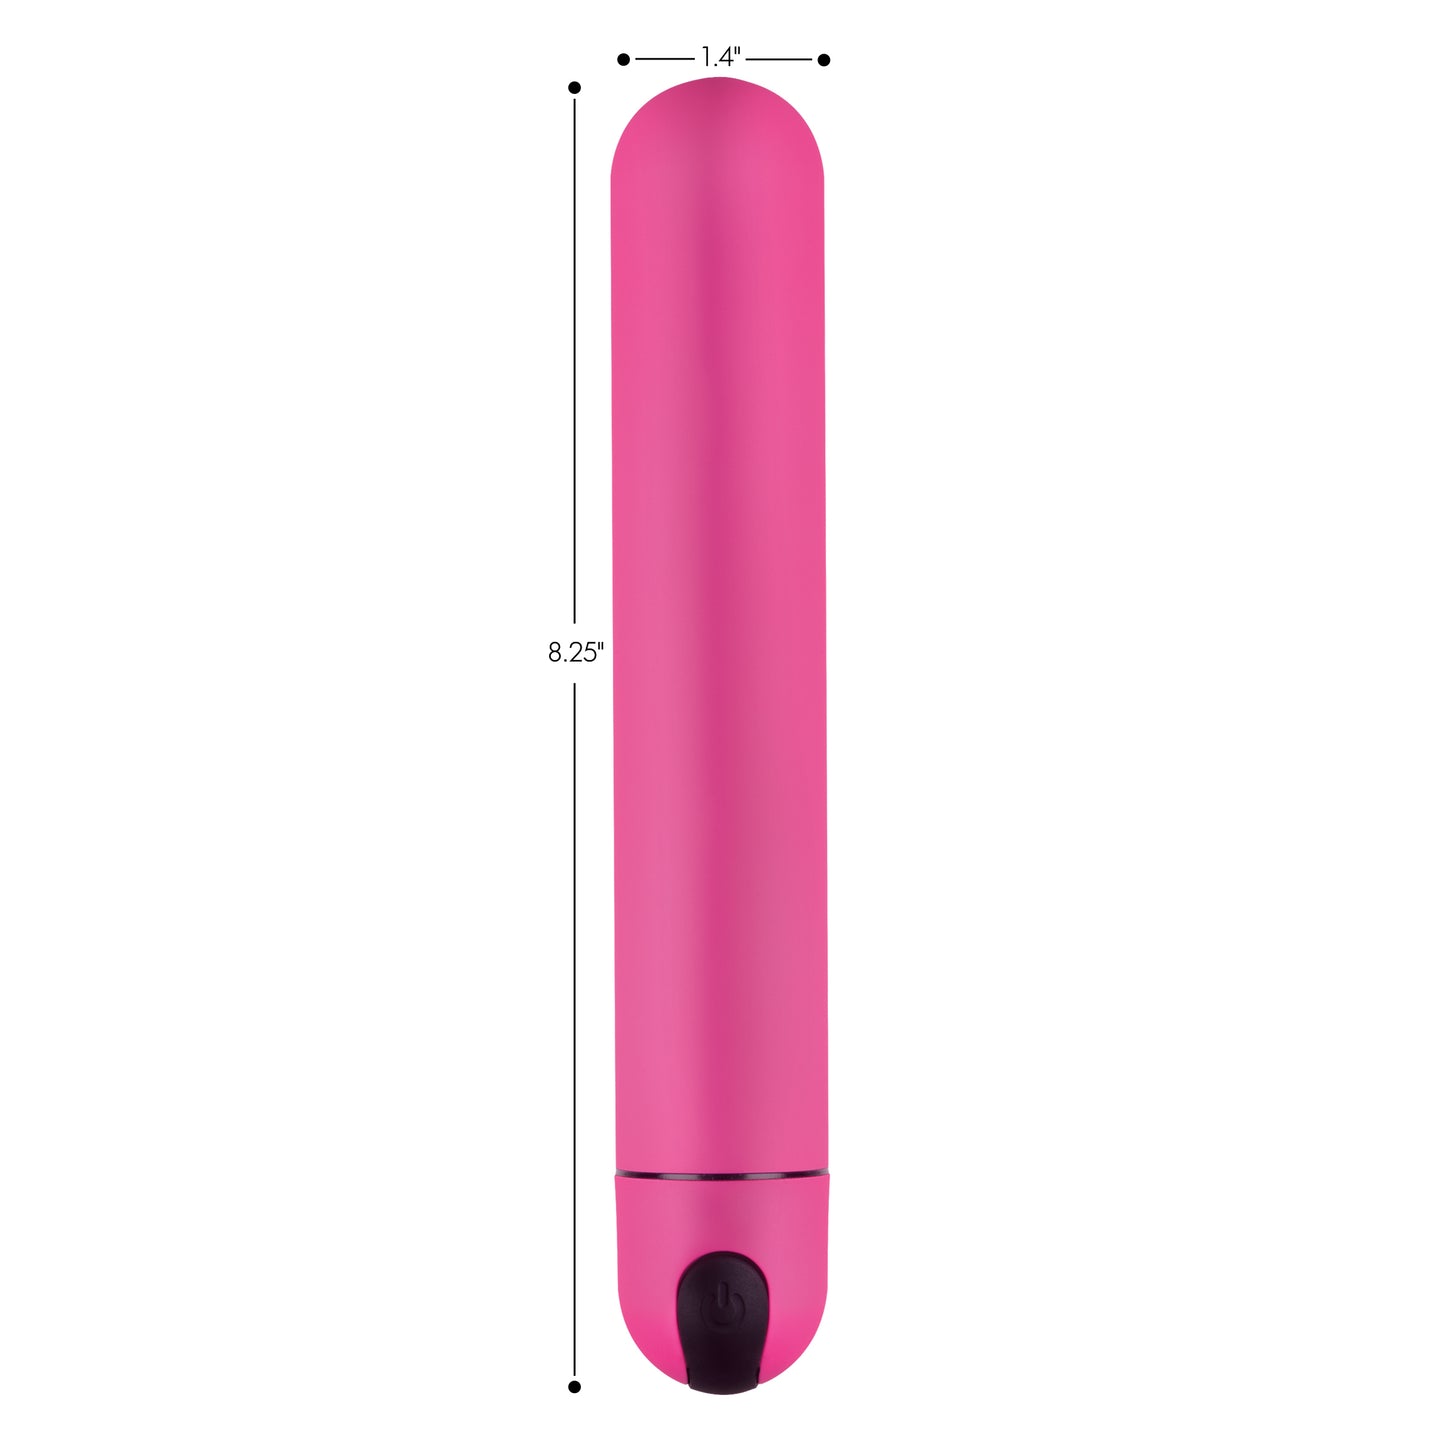 XL Bullet Vibrator - Pink - UABDSM